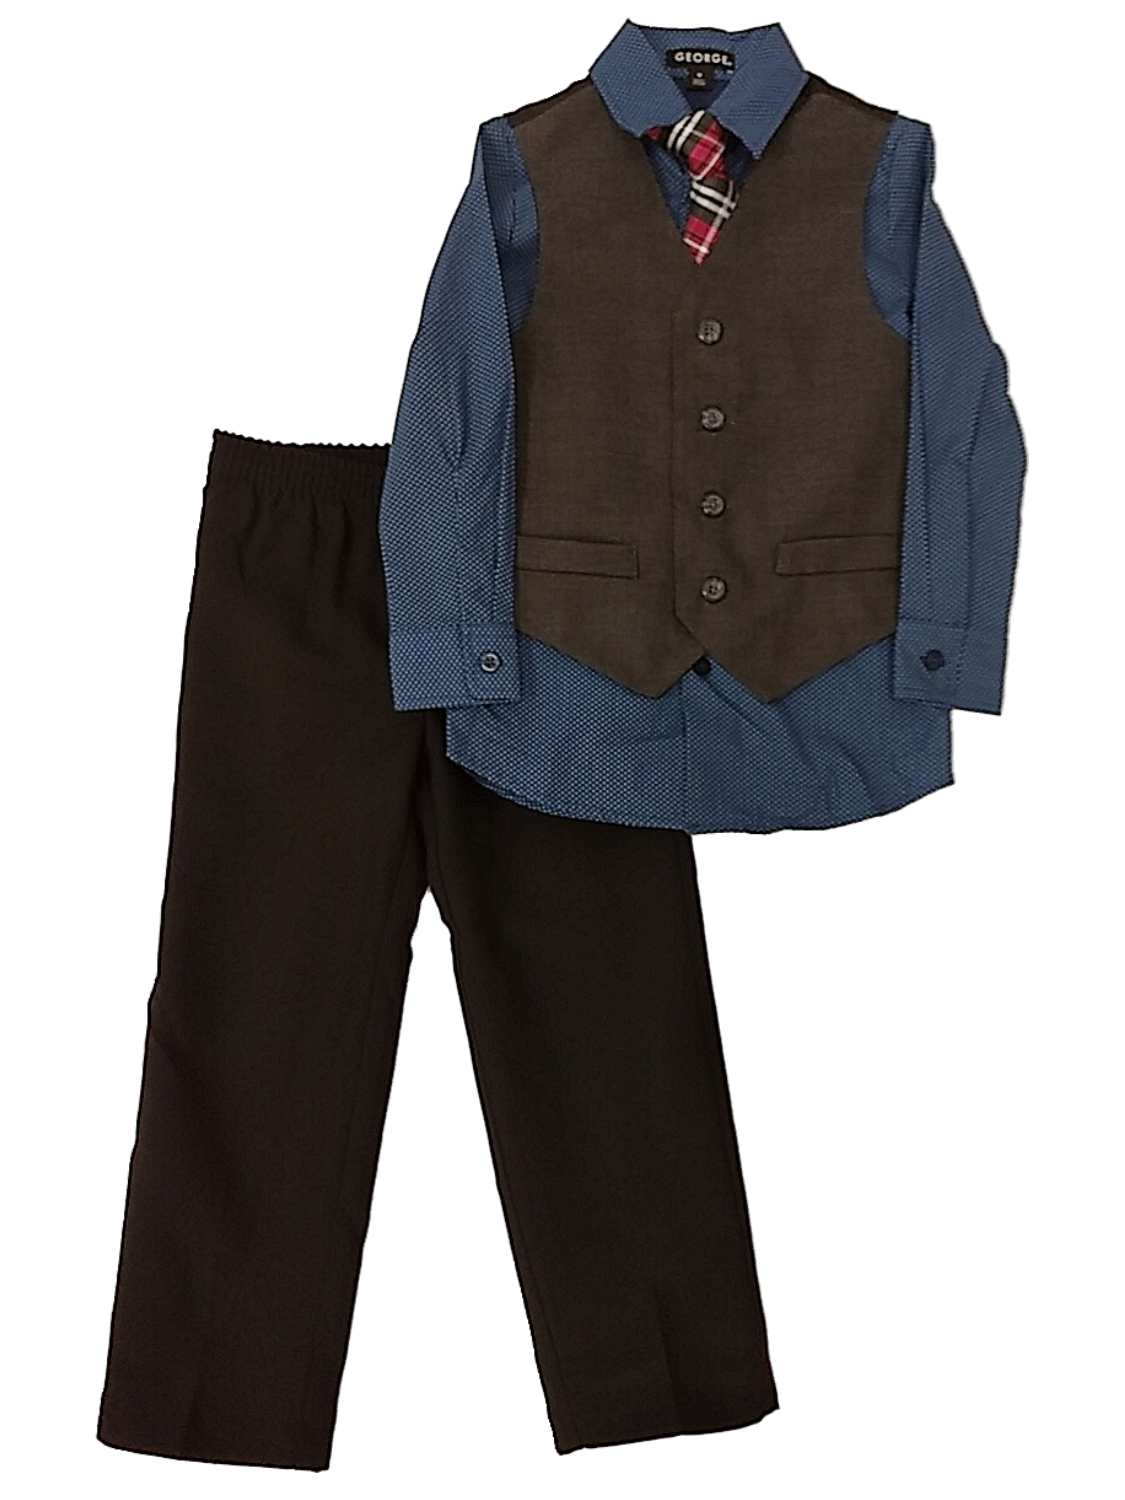 GEORGE Boys 4 Piece Suit Blue Polka Dot Shirt Black Pants Charcoal Vest & Tie Set 4